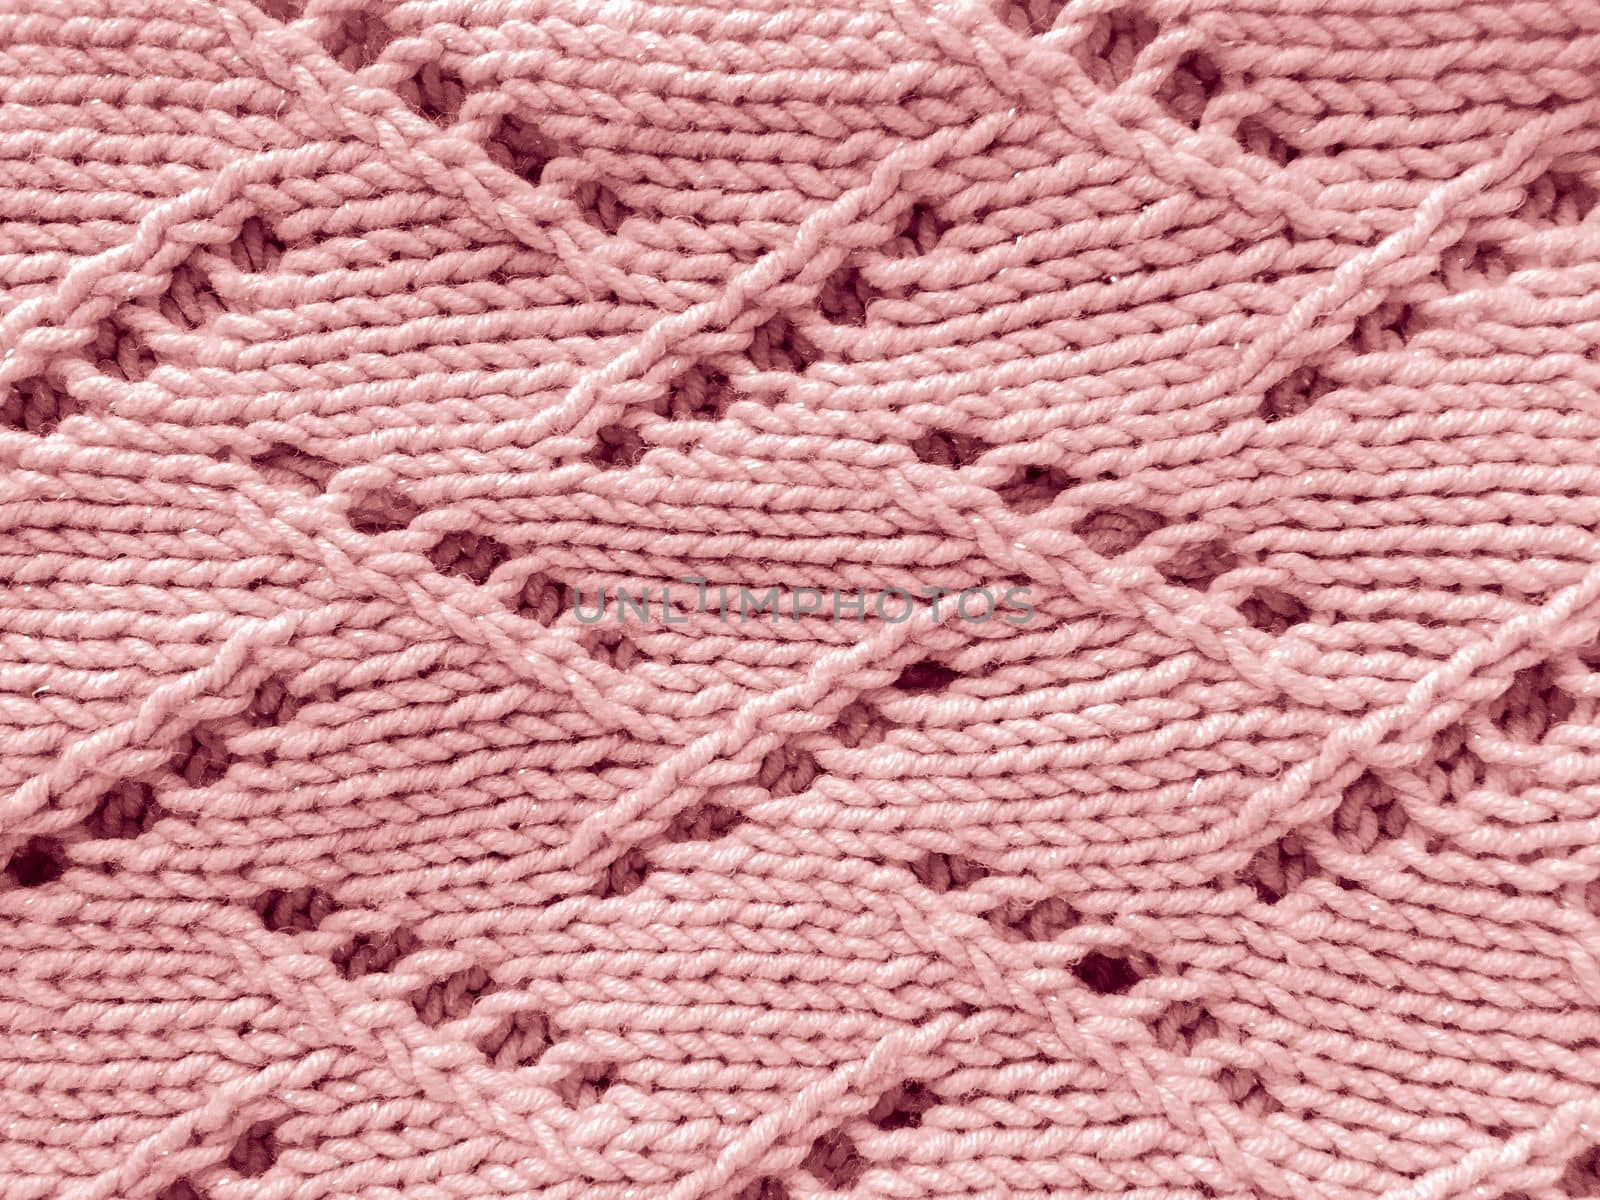 Jacquard Knitting. Scandinavian Linen Garment. Abstract Closeup Thread. Vintage Knitwear Cloth. Texture Knitted Fabric. Xmas Wool Print. Handmade Fiber Background. Woven Fabrics.